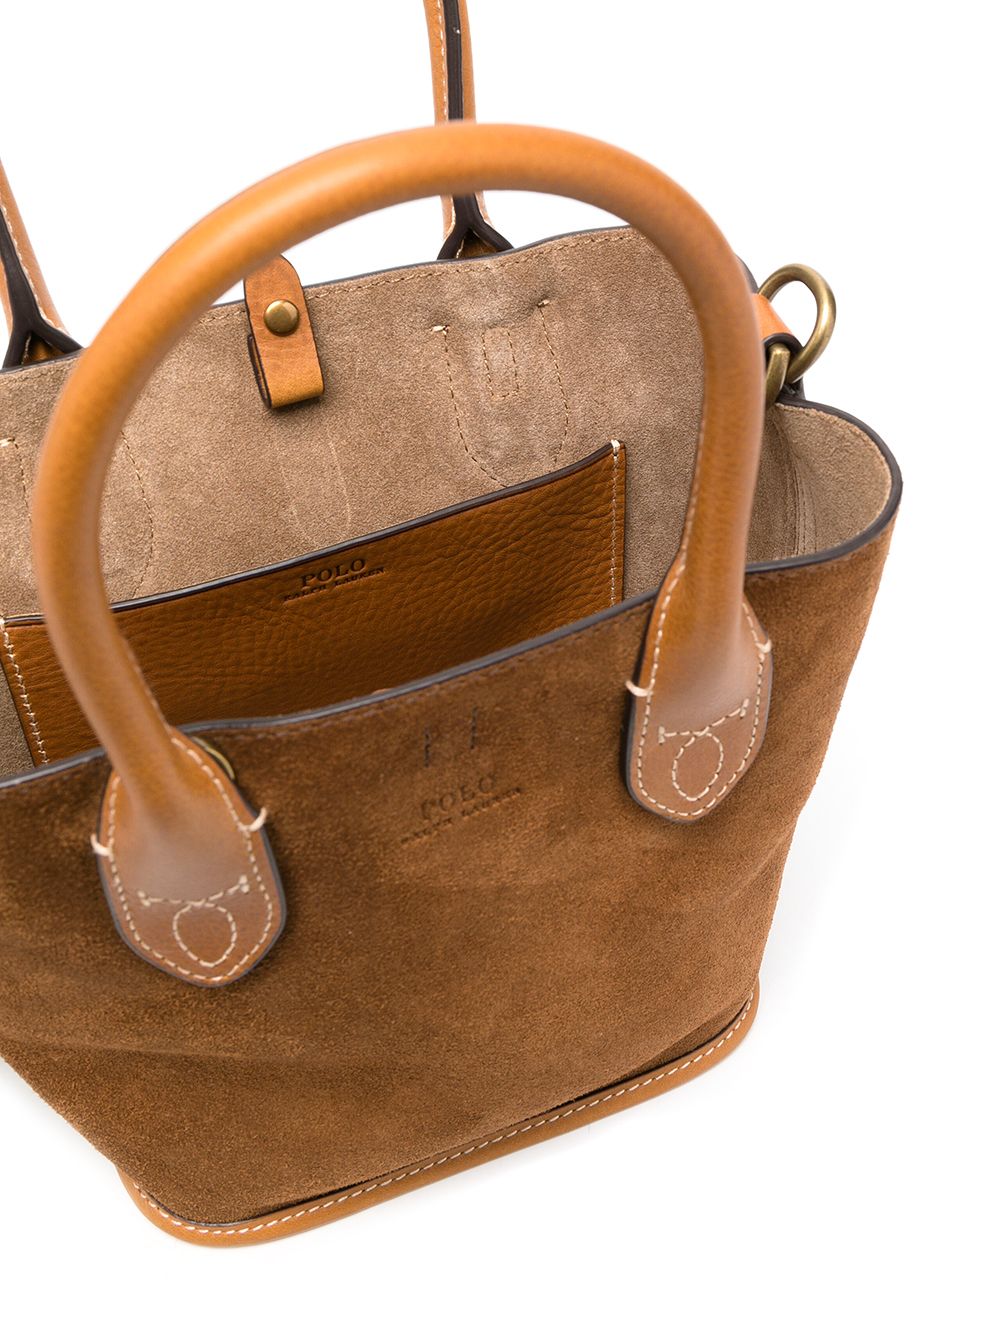 Buy Polo Ralph Lauren Women Brown Medium Tote Bag Online - 693682